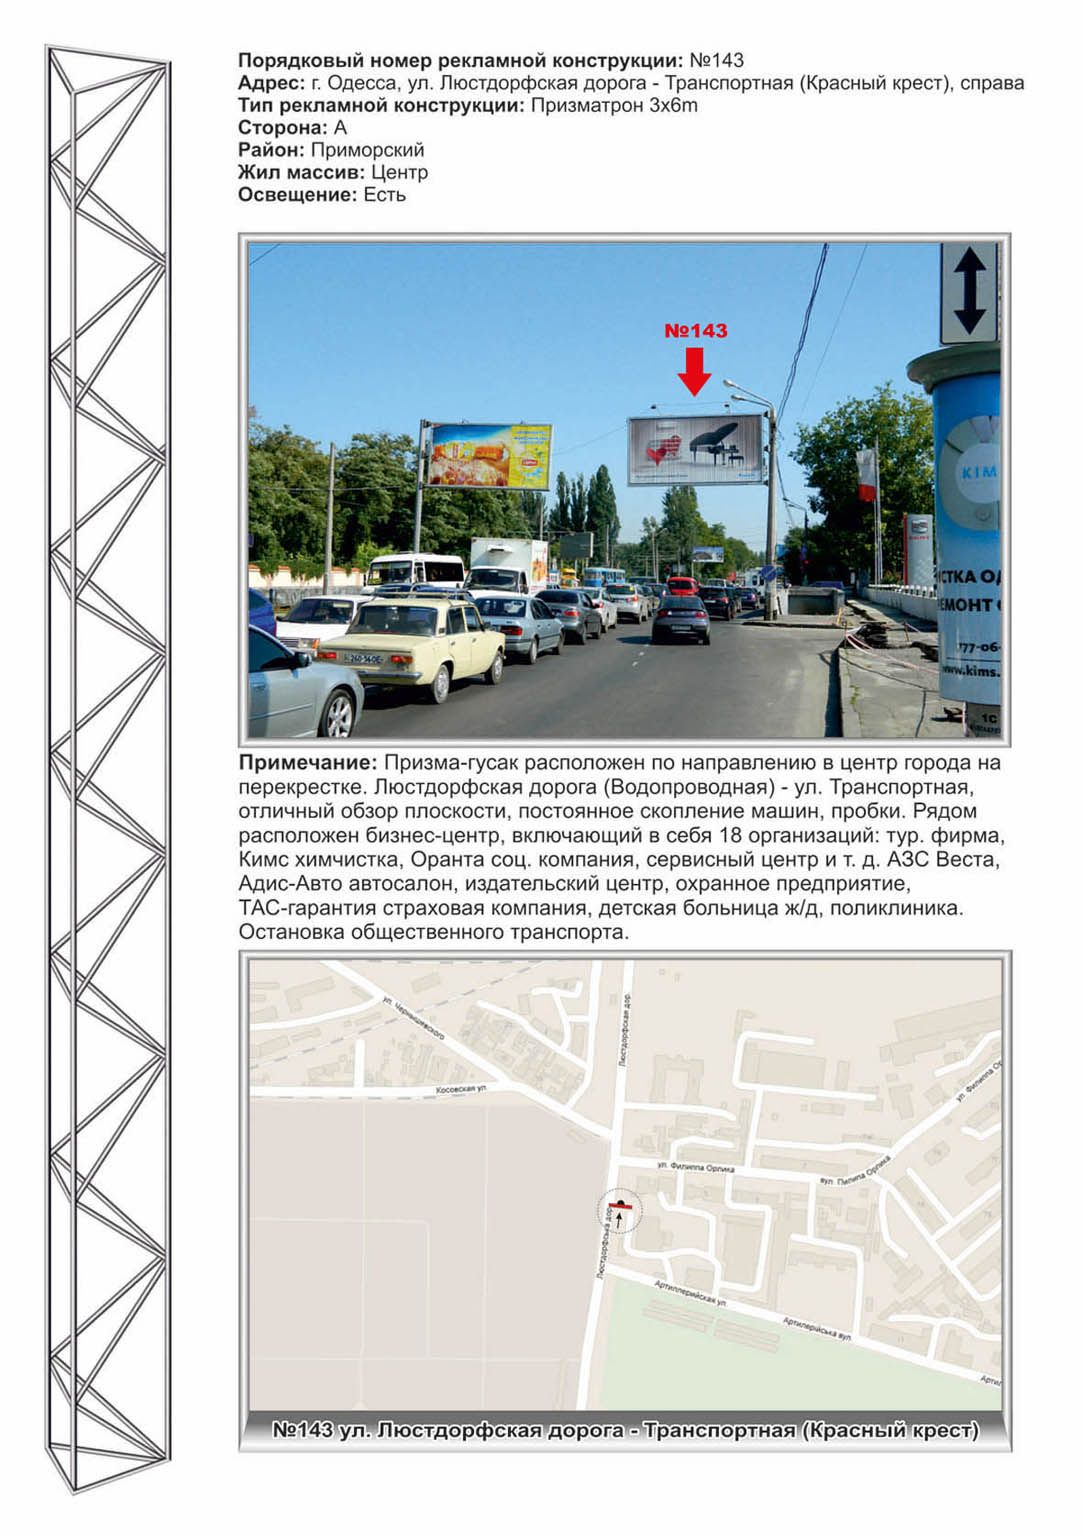 Роллер/Призматрон, Одесса, №143 Люстдорфская дорога - Транспортная(Красный крест ст.А) в город